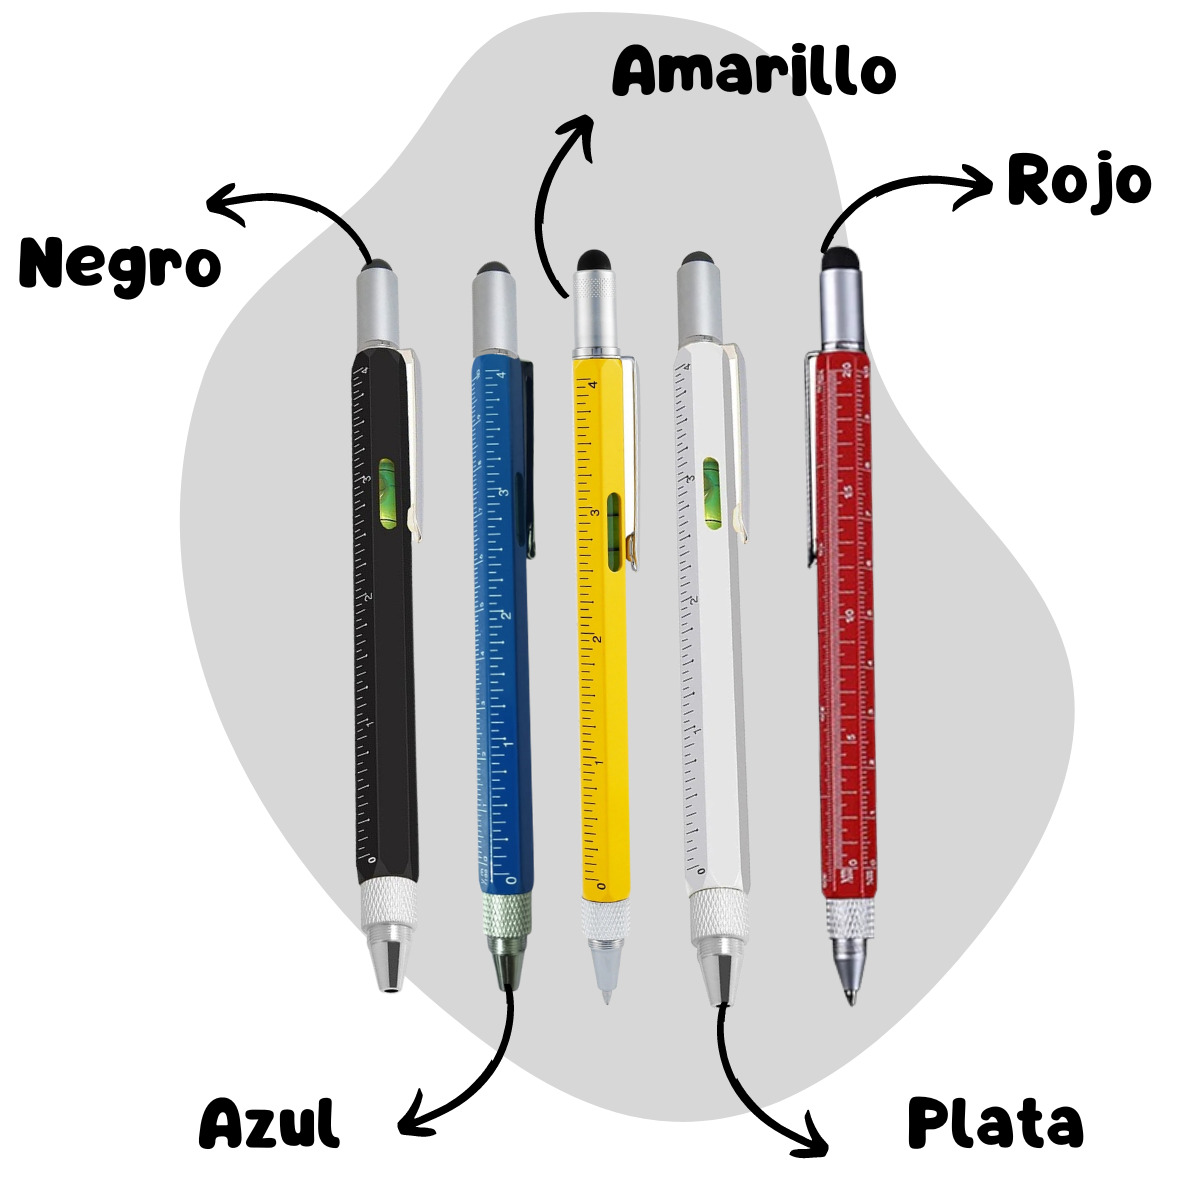 Mini bolígrafo multifunción amarillo